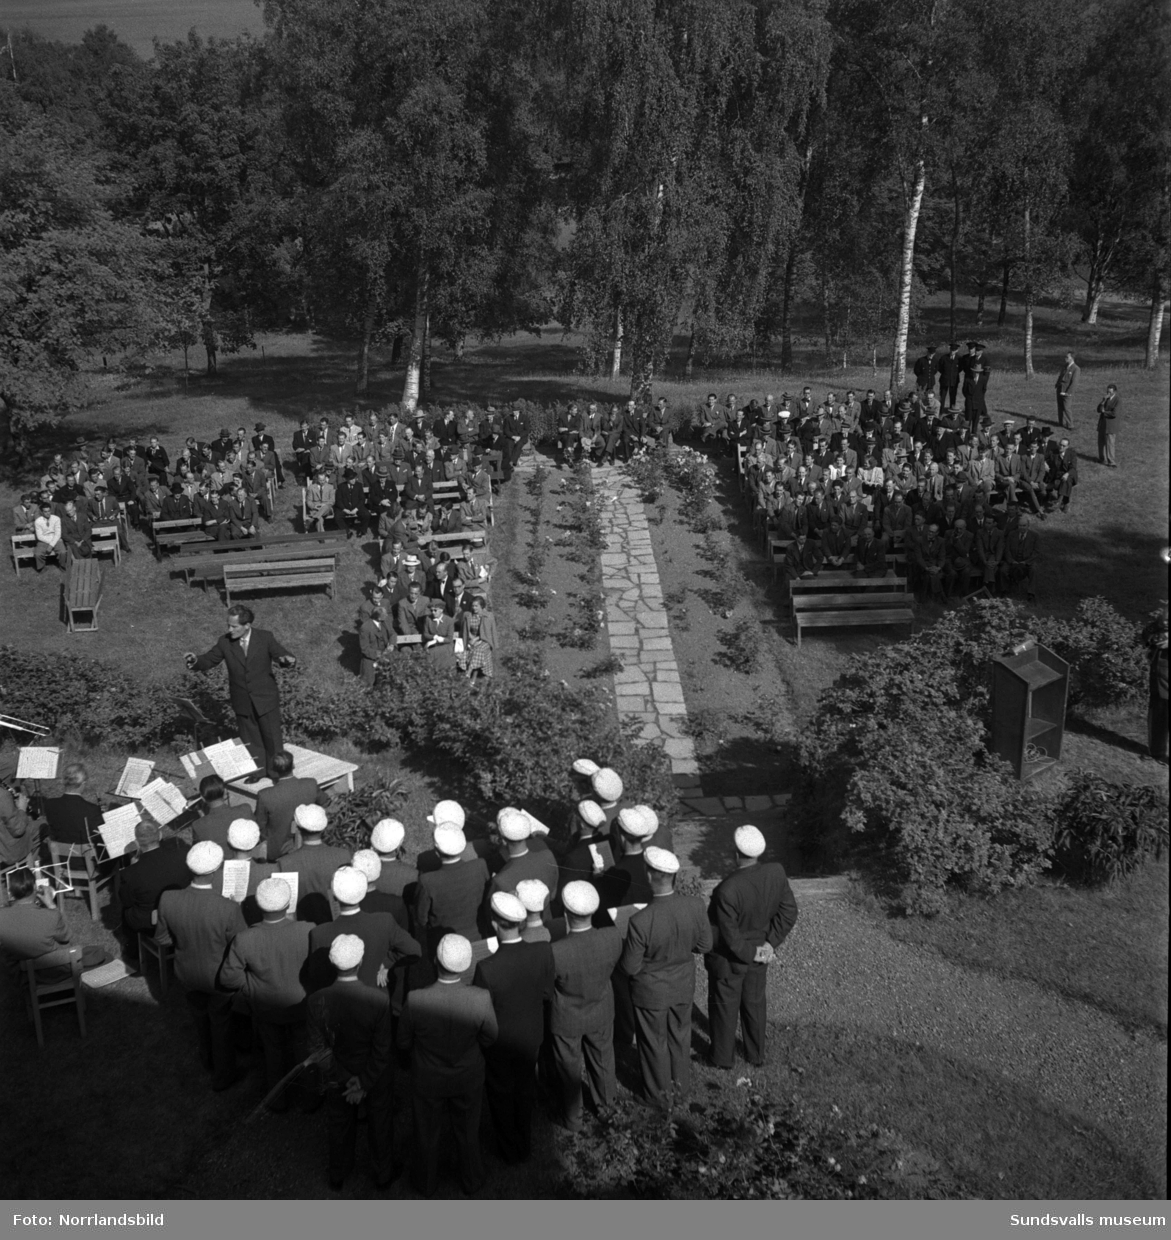 Tunadals sågverks hundraårsjubileum firas vid Tunadals herrgård. Stor publik i parken med tal av bland andra Axel Enström, förtäring, serveringspersonal och jubileumscigarrer.